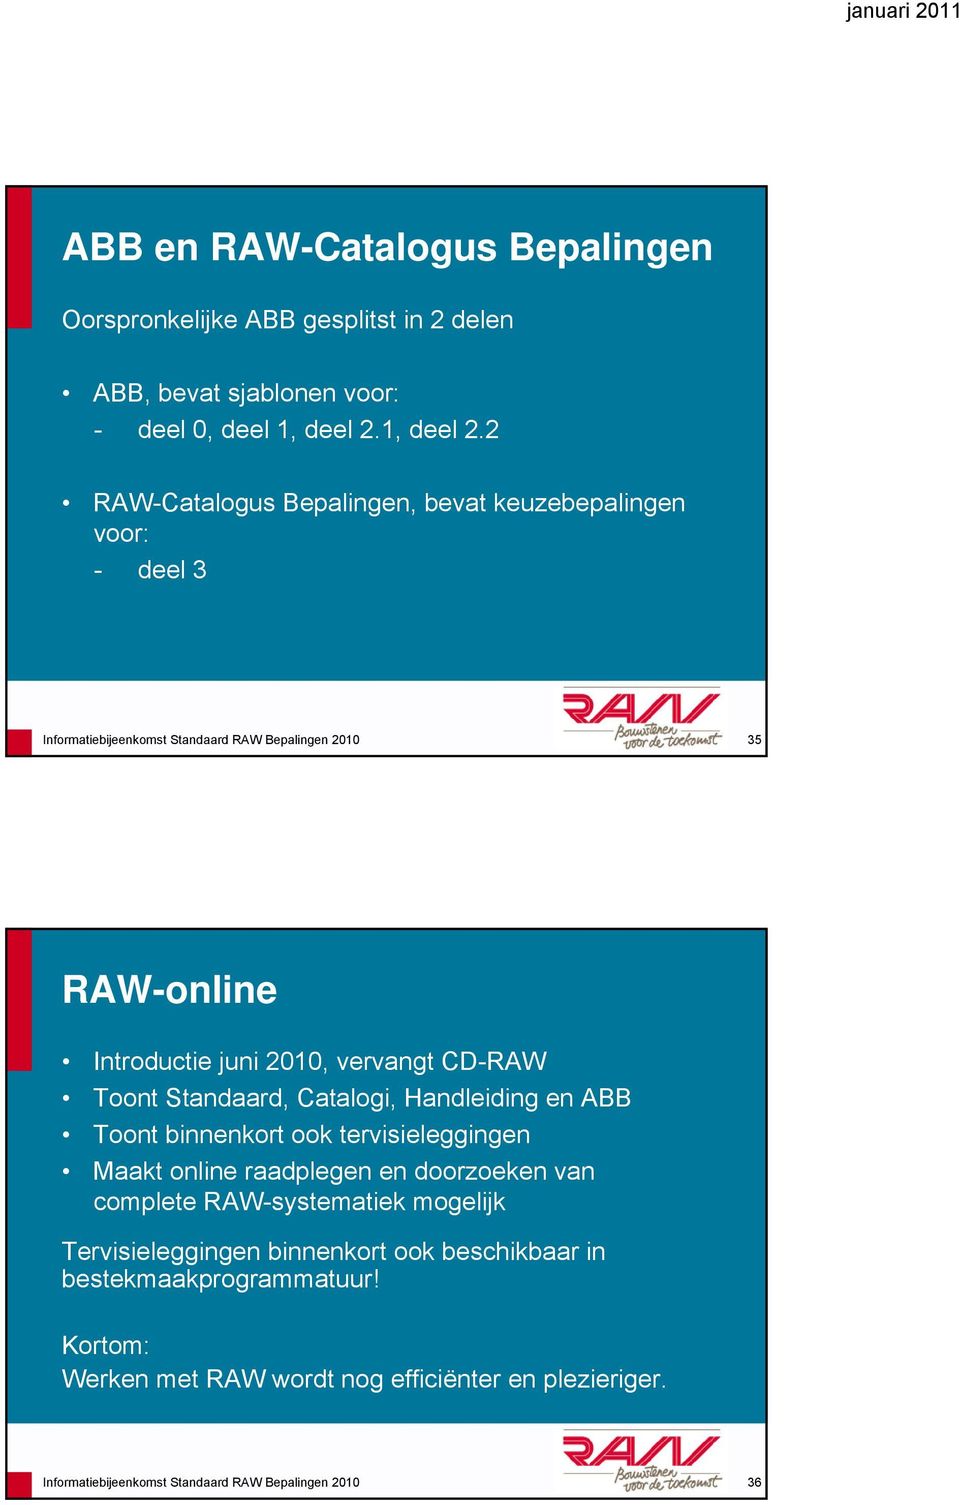 2 RAW-Catalogus Bepalingen, bevat keuzebepalingen voor: - deel 3 Informatiebijeenkomst Standaard RAW Bepalingen 2010 35 RAW-online Introductie juni 2010, vervangt